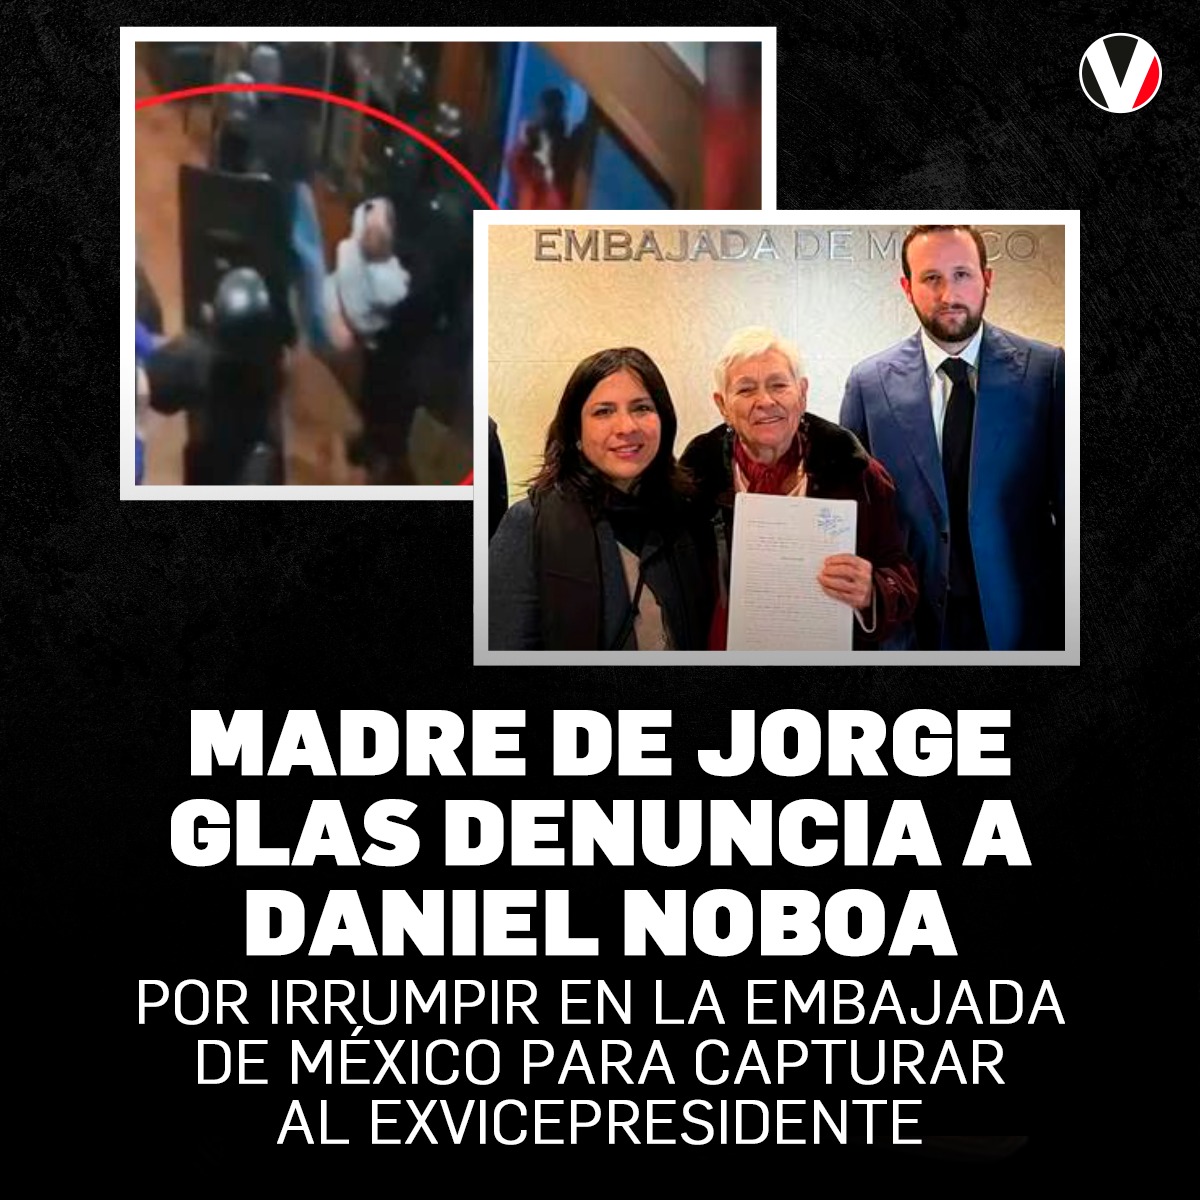 #LoMásLeído | Esta semana la madre del exvicepresidente #JorgeGlas, Norma Espinel, presentó desde #España una demanda en contra de #DanielNoboa y varios funcionarios por la irrupción armada en la embajada de #México en Quito. ¿De qué lo acusa? ▶️ v.vistazo.com/4acspd8